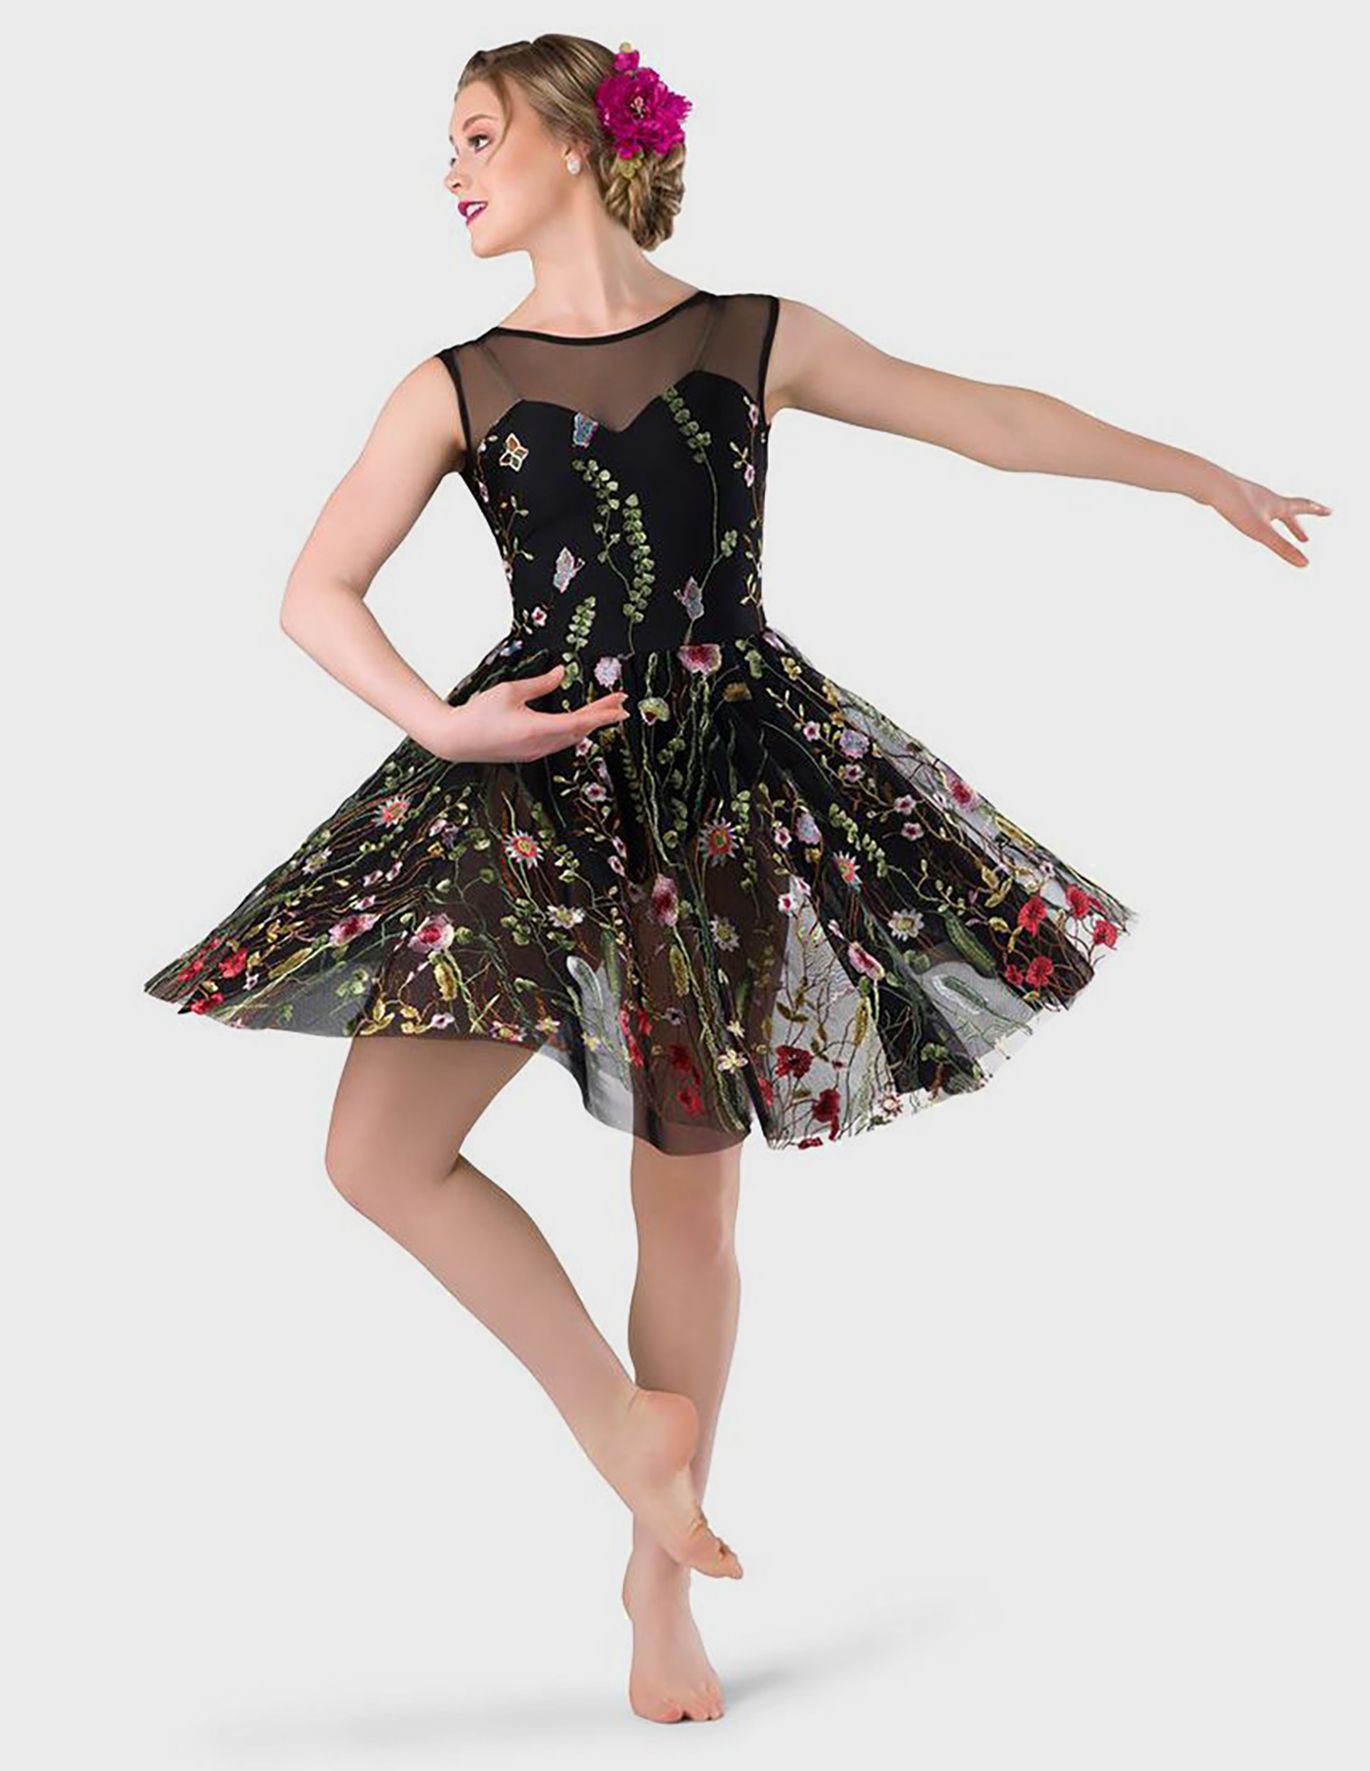 Costume Gallery La Vie En Rose Lyrical Dress Model 20233